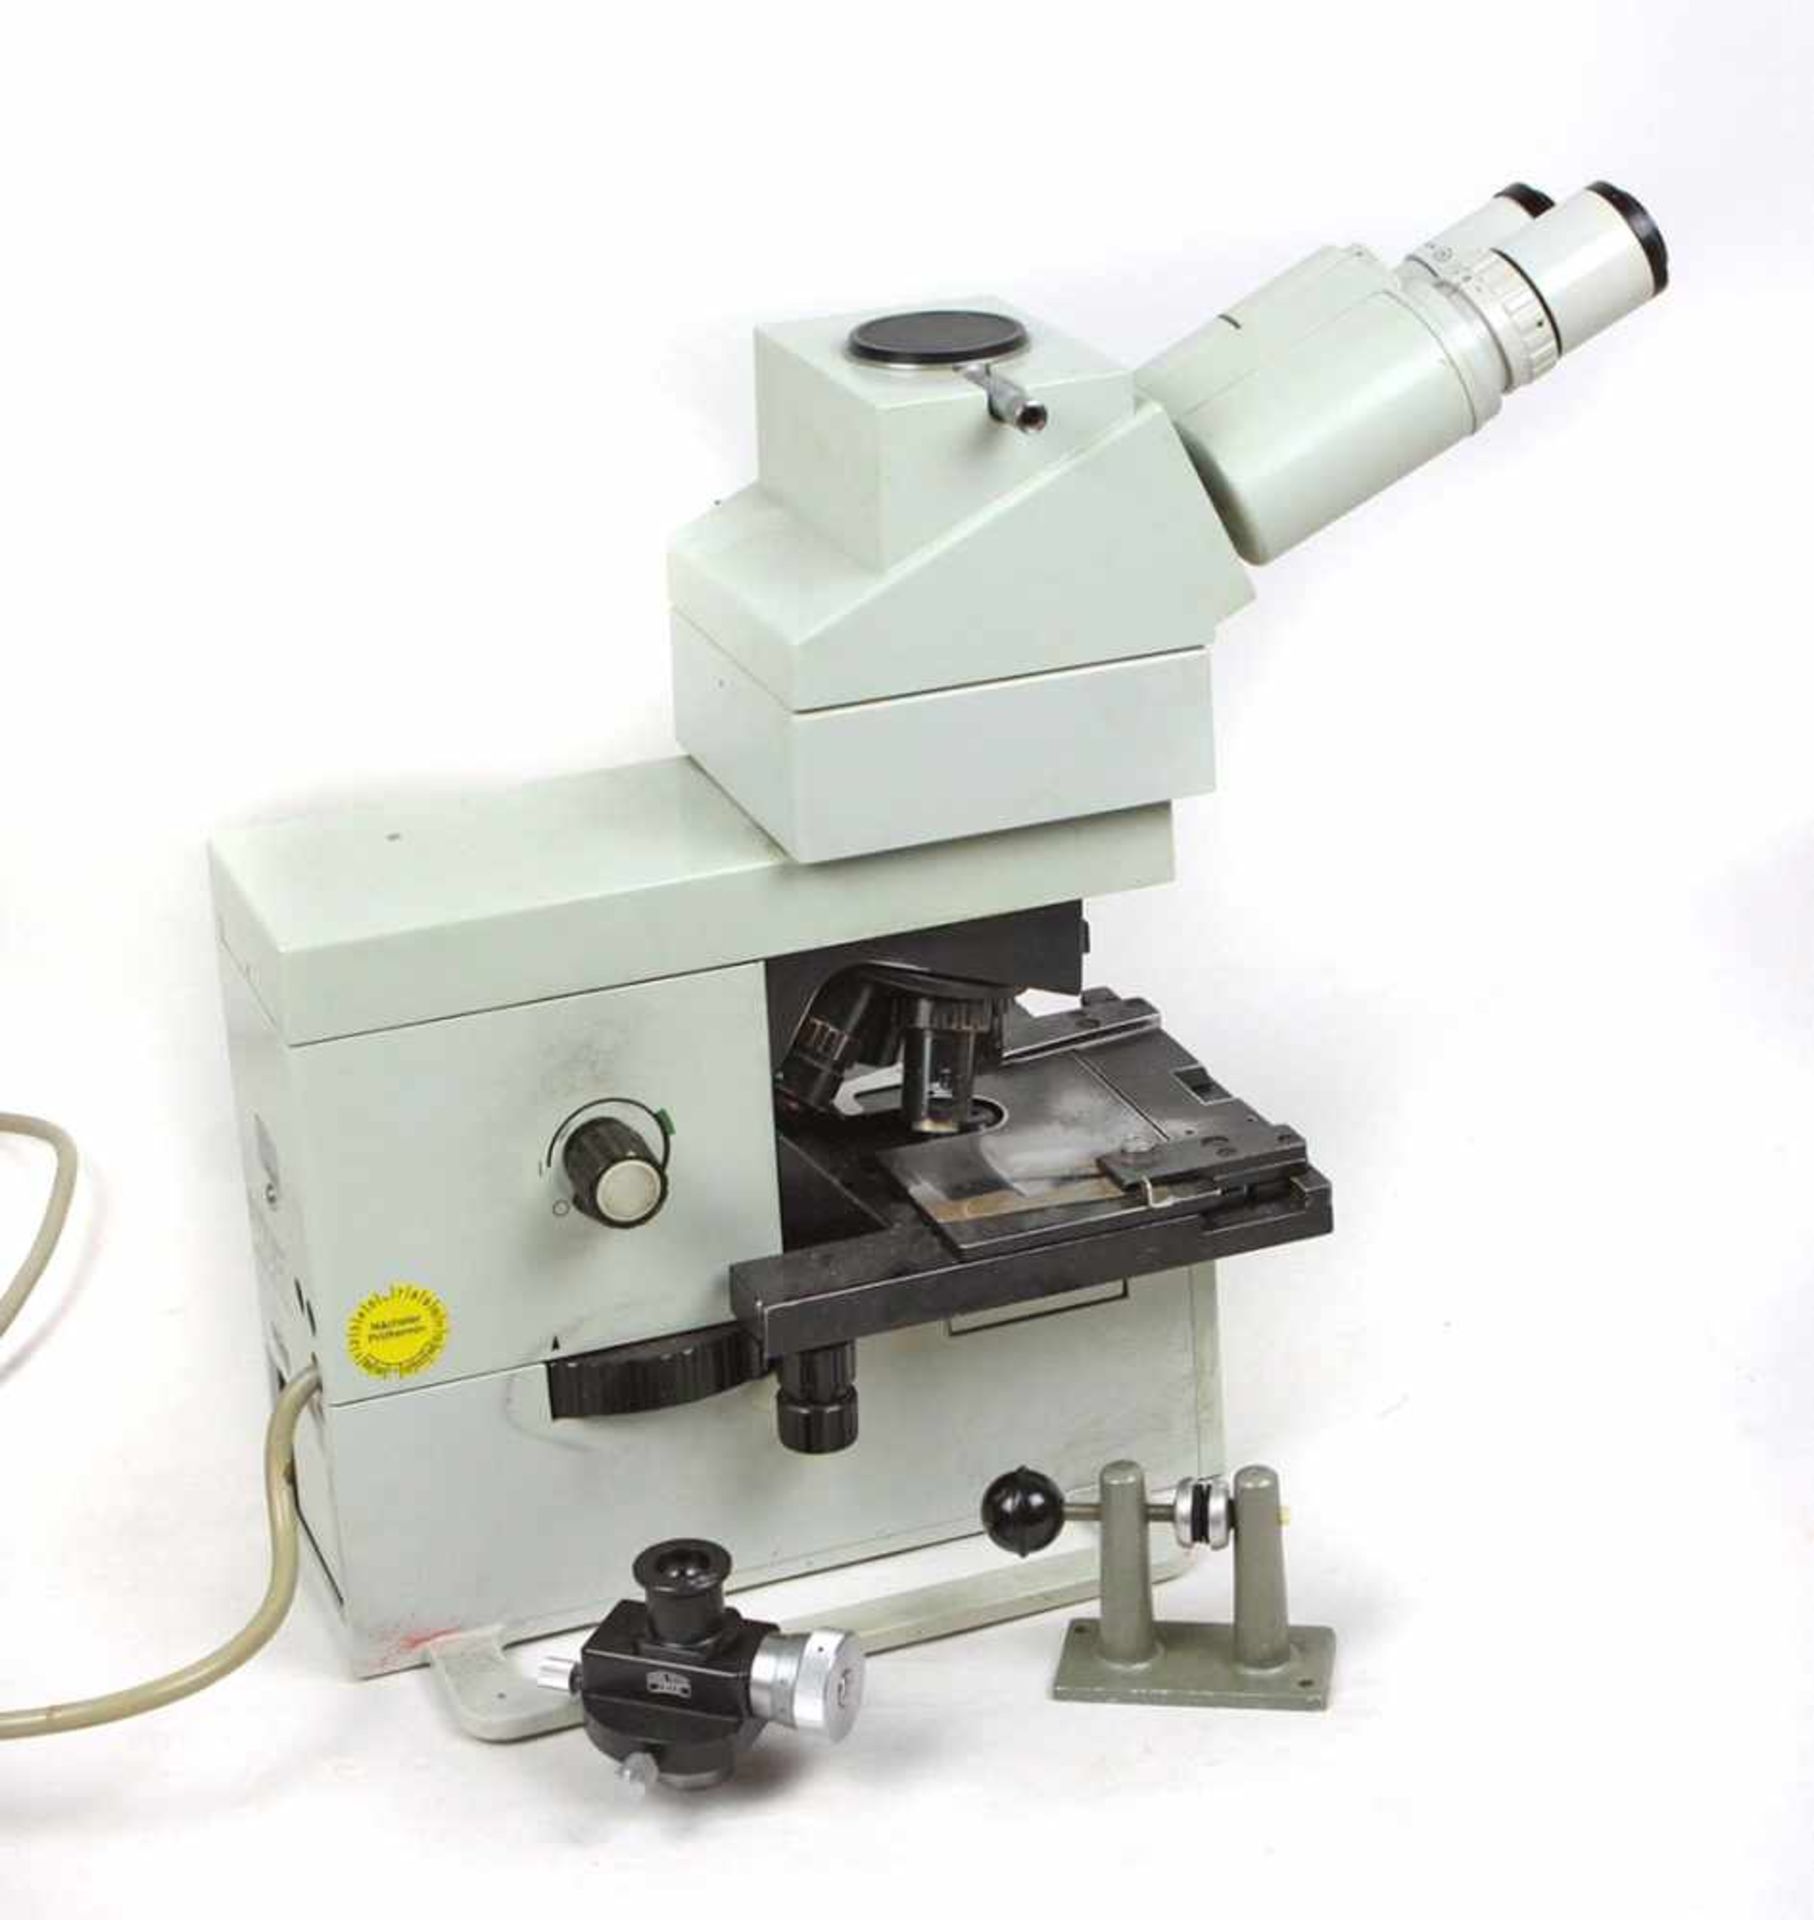 Mikroskop Carl Zeiss JenaJenamed 2 ist ein professionelles Durchlichtmikroskop, grau lackierter